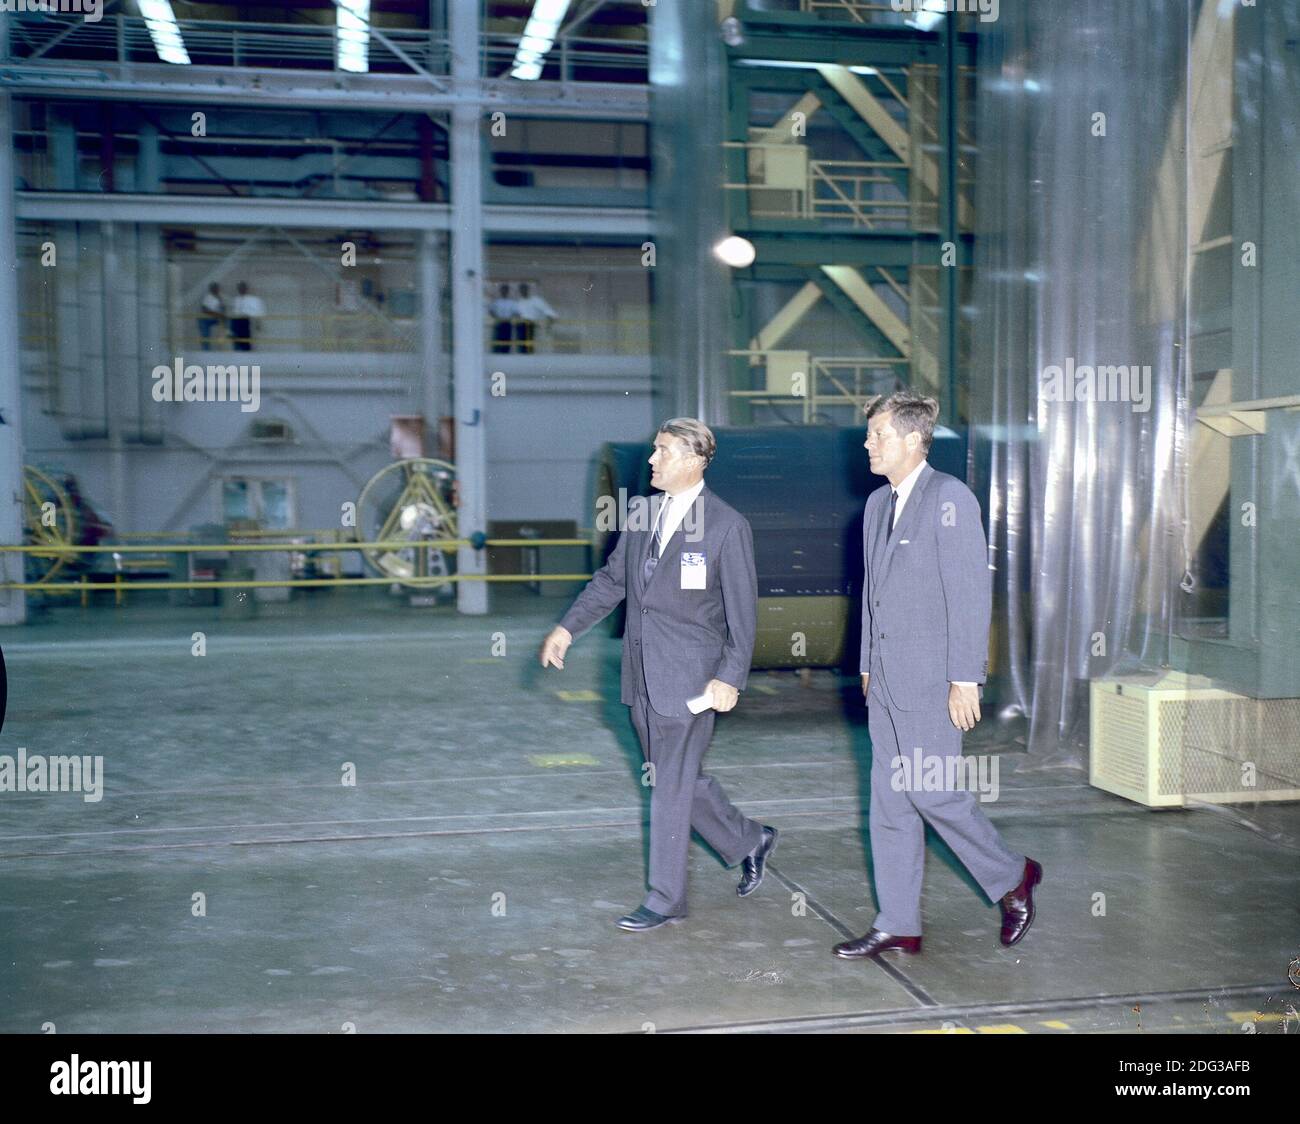 Le président des États-Unis John F. Kennedy a visité le Marshall Space Flight Centre (MSFC) à Huntsville, Alabama, États-Unis, le 11 septembre 1962. Ici, le président Kennedy et le Dr Wernher von Braun, directeur de la MSFC, font le tour de l'un des laboratoires. Photo de la NASA via CNP Banque D'Images